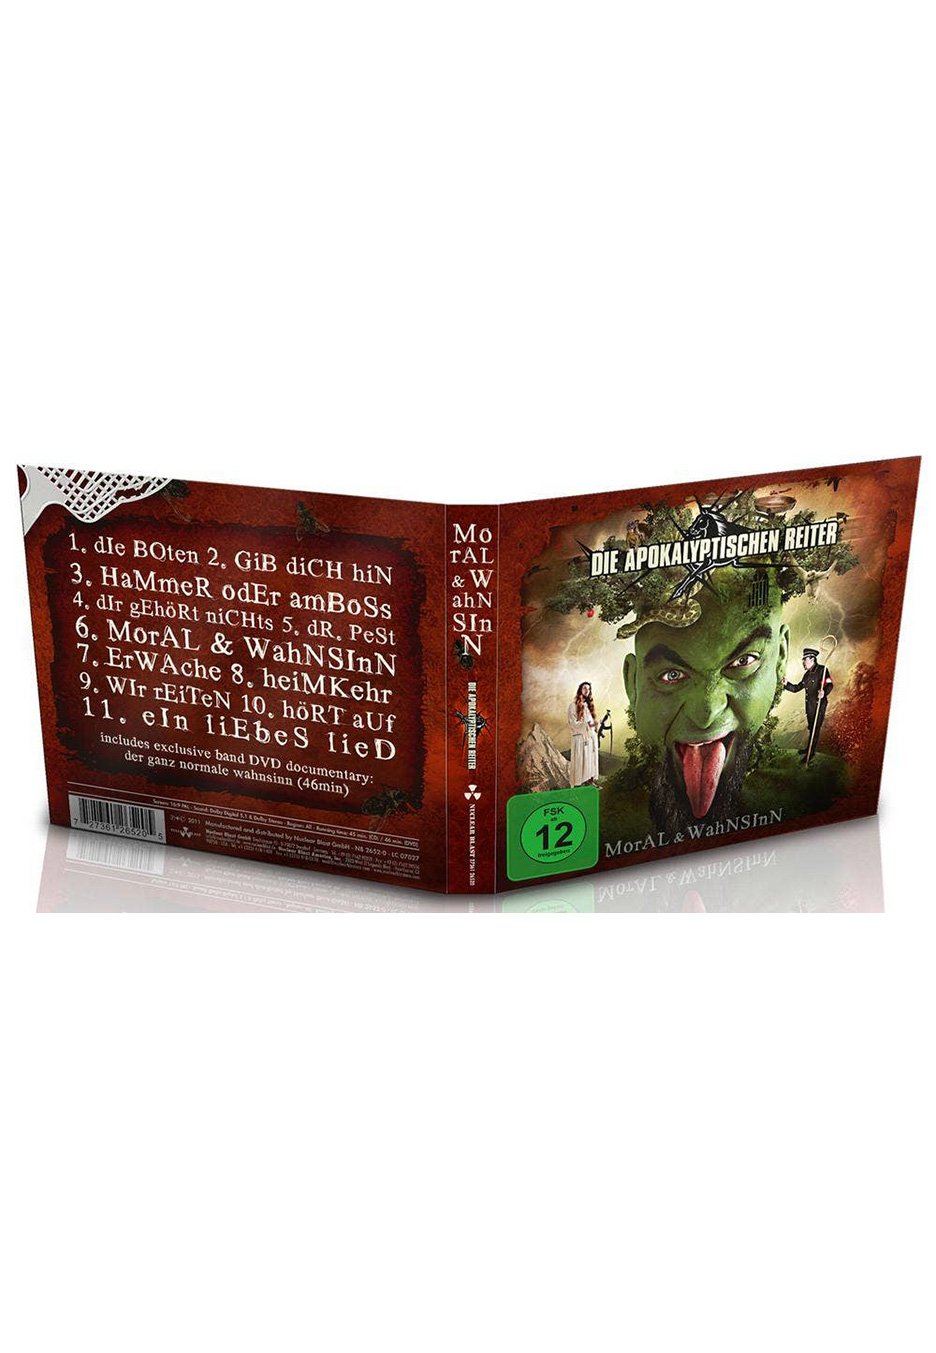 Die Apokalyptischen Reiter - Moral & Wahnsinn - Digipak CD + DVD